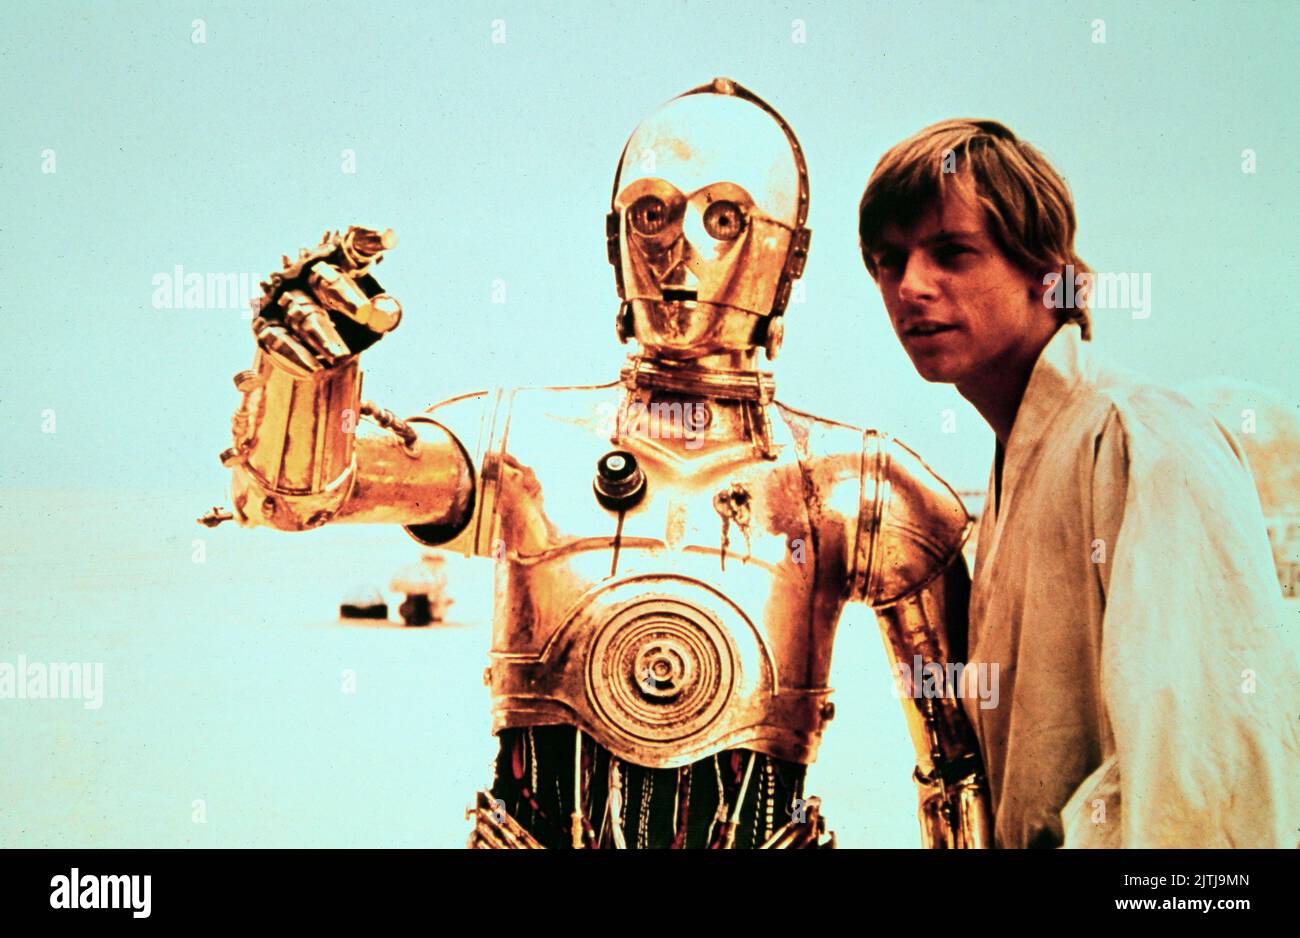 Star Wars, alias Krieg der Sterne, EE.UU. 1977, Región: George Lucas, Charaktere: C-3PO y Mark Hamill als Luke Skywalker Foto de stock